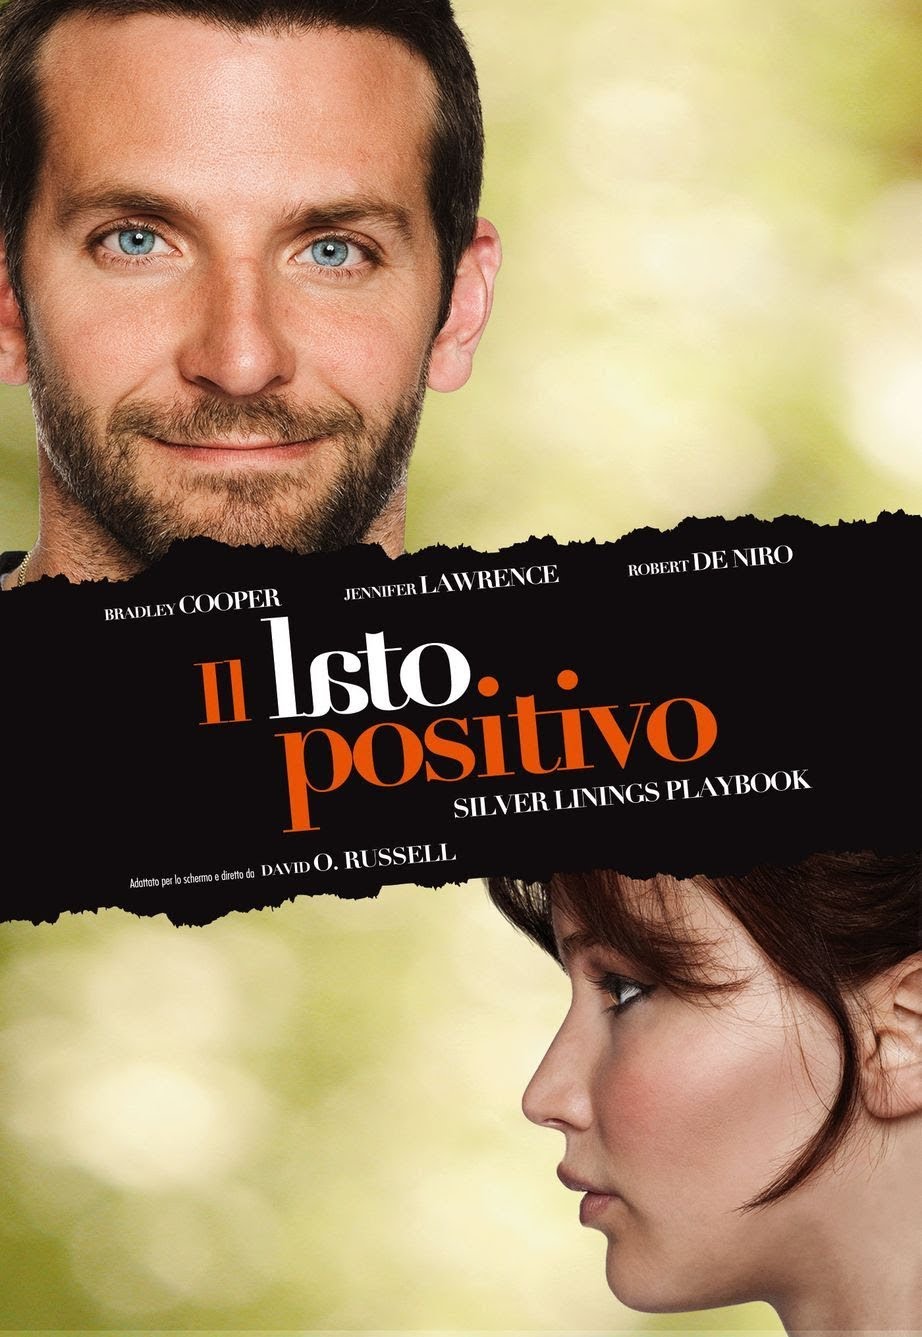 Il lato positivo [HD] (2013)